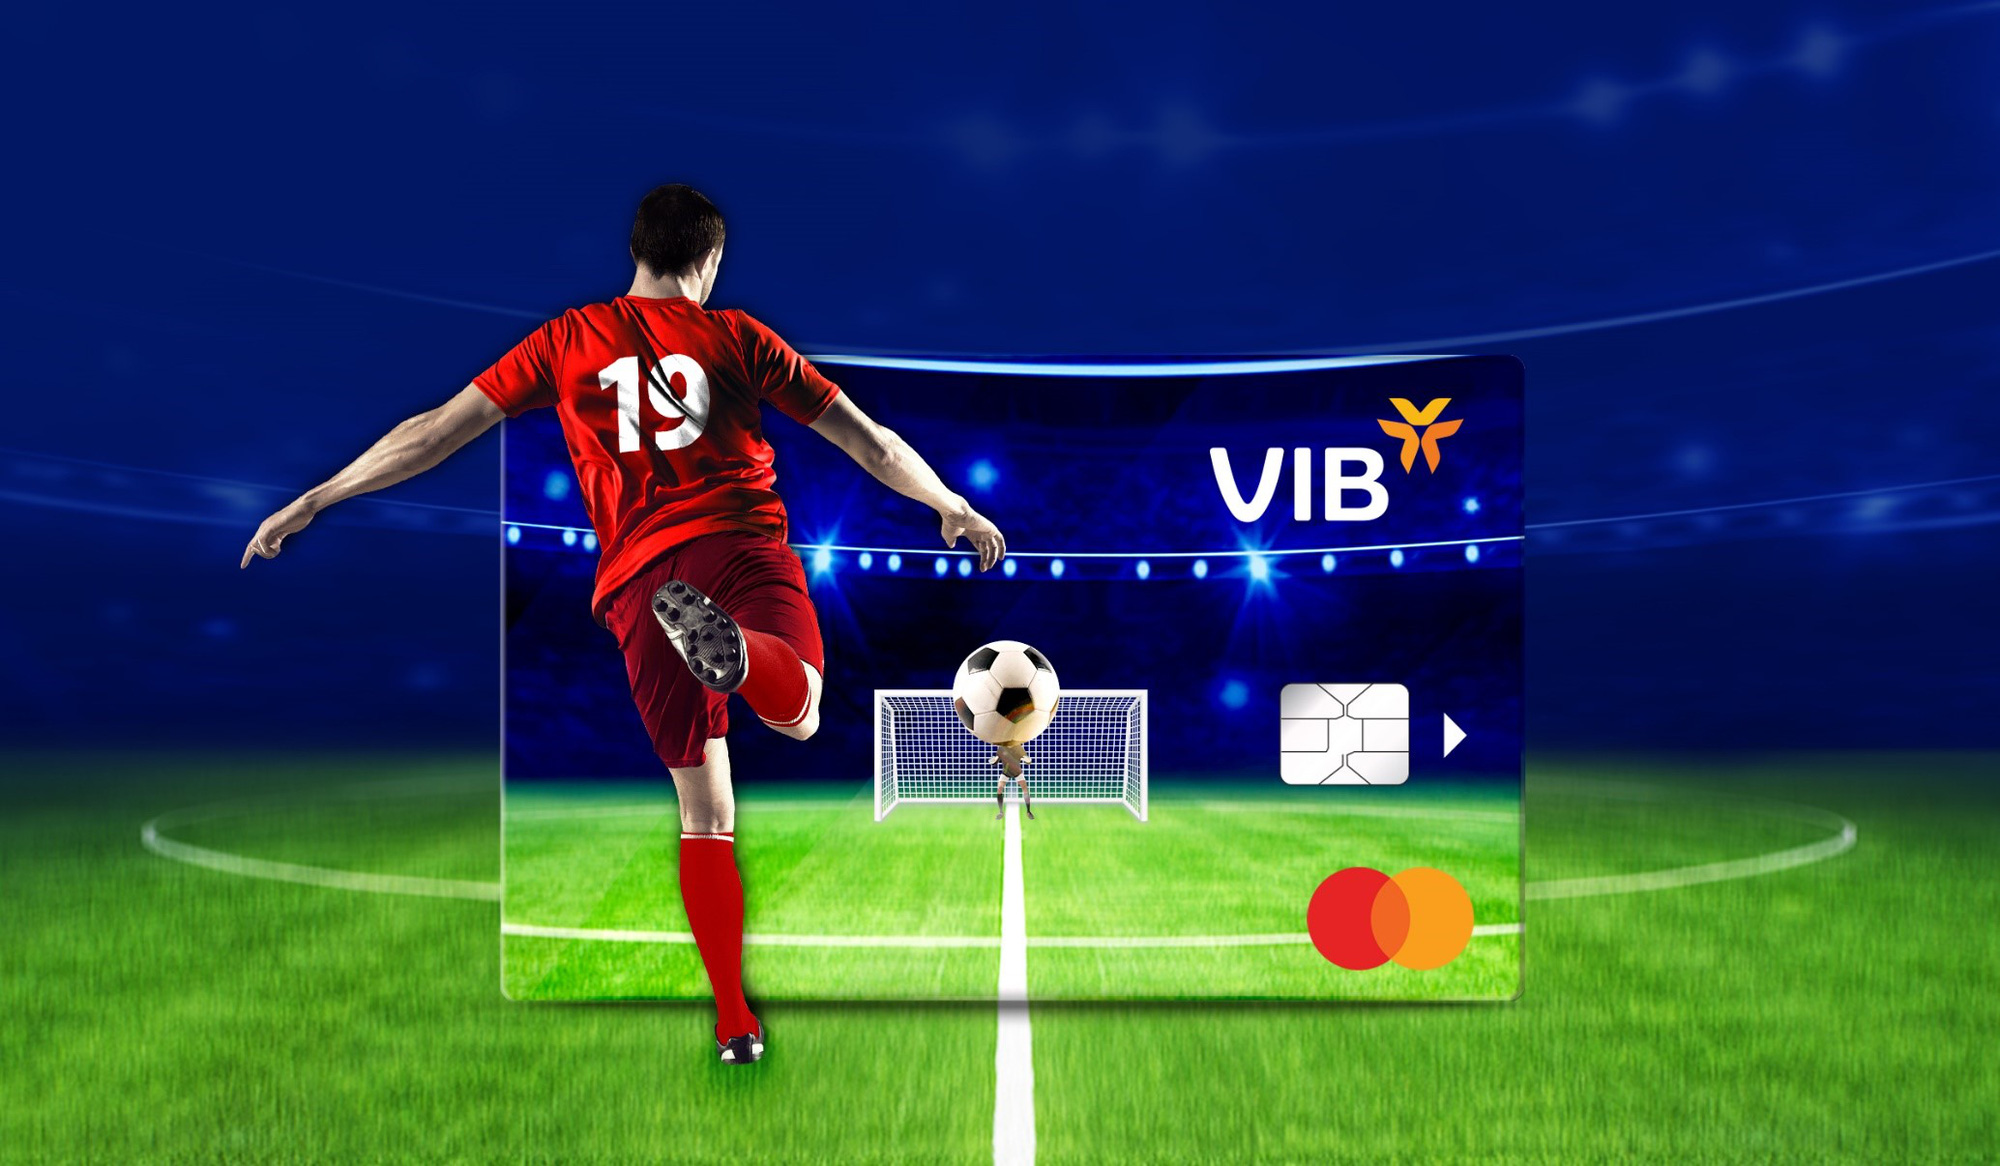 VIB đồng hành cổ vũ đội tuyển Việt Nam tại AFF Suzuki Cup 2020 - Ảnh 1.